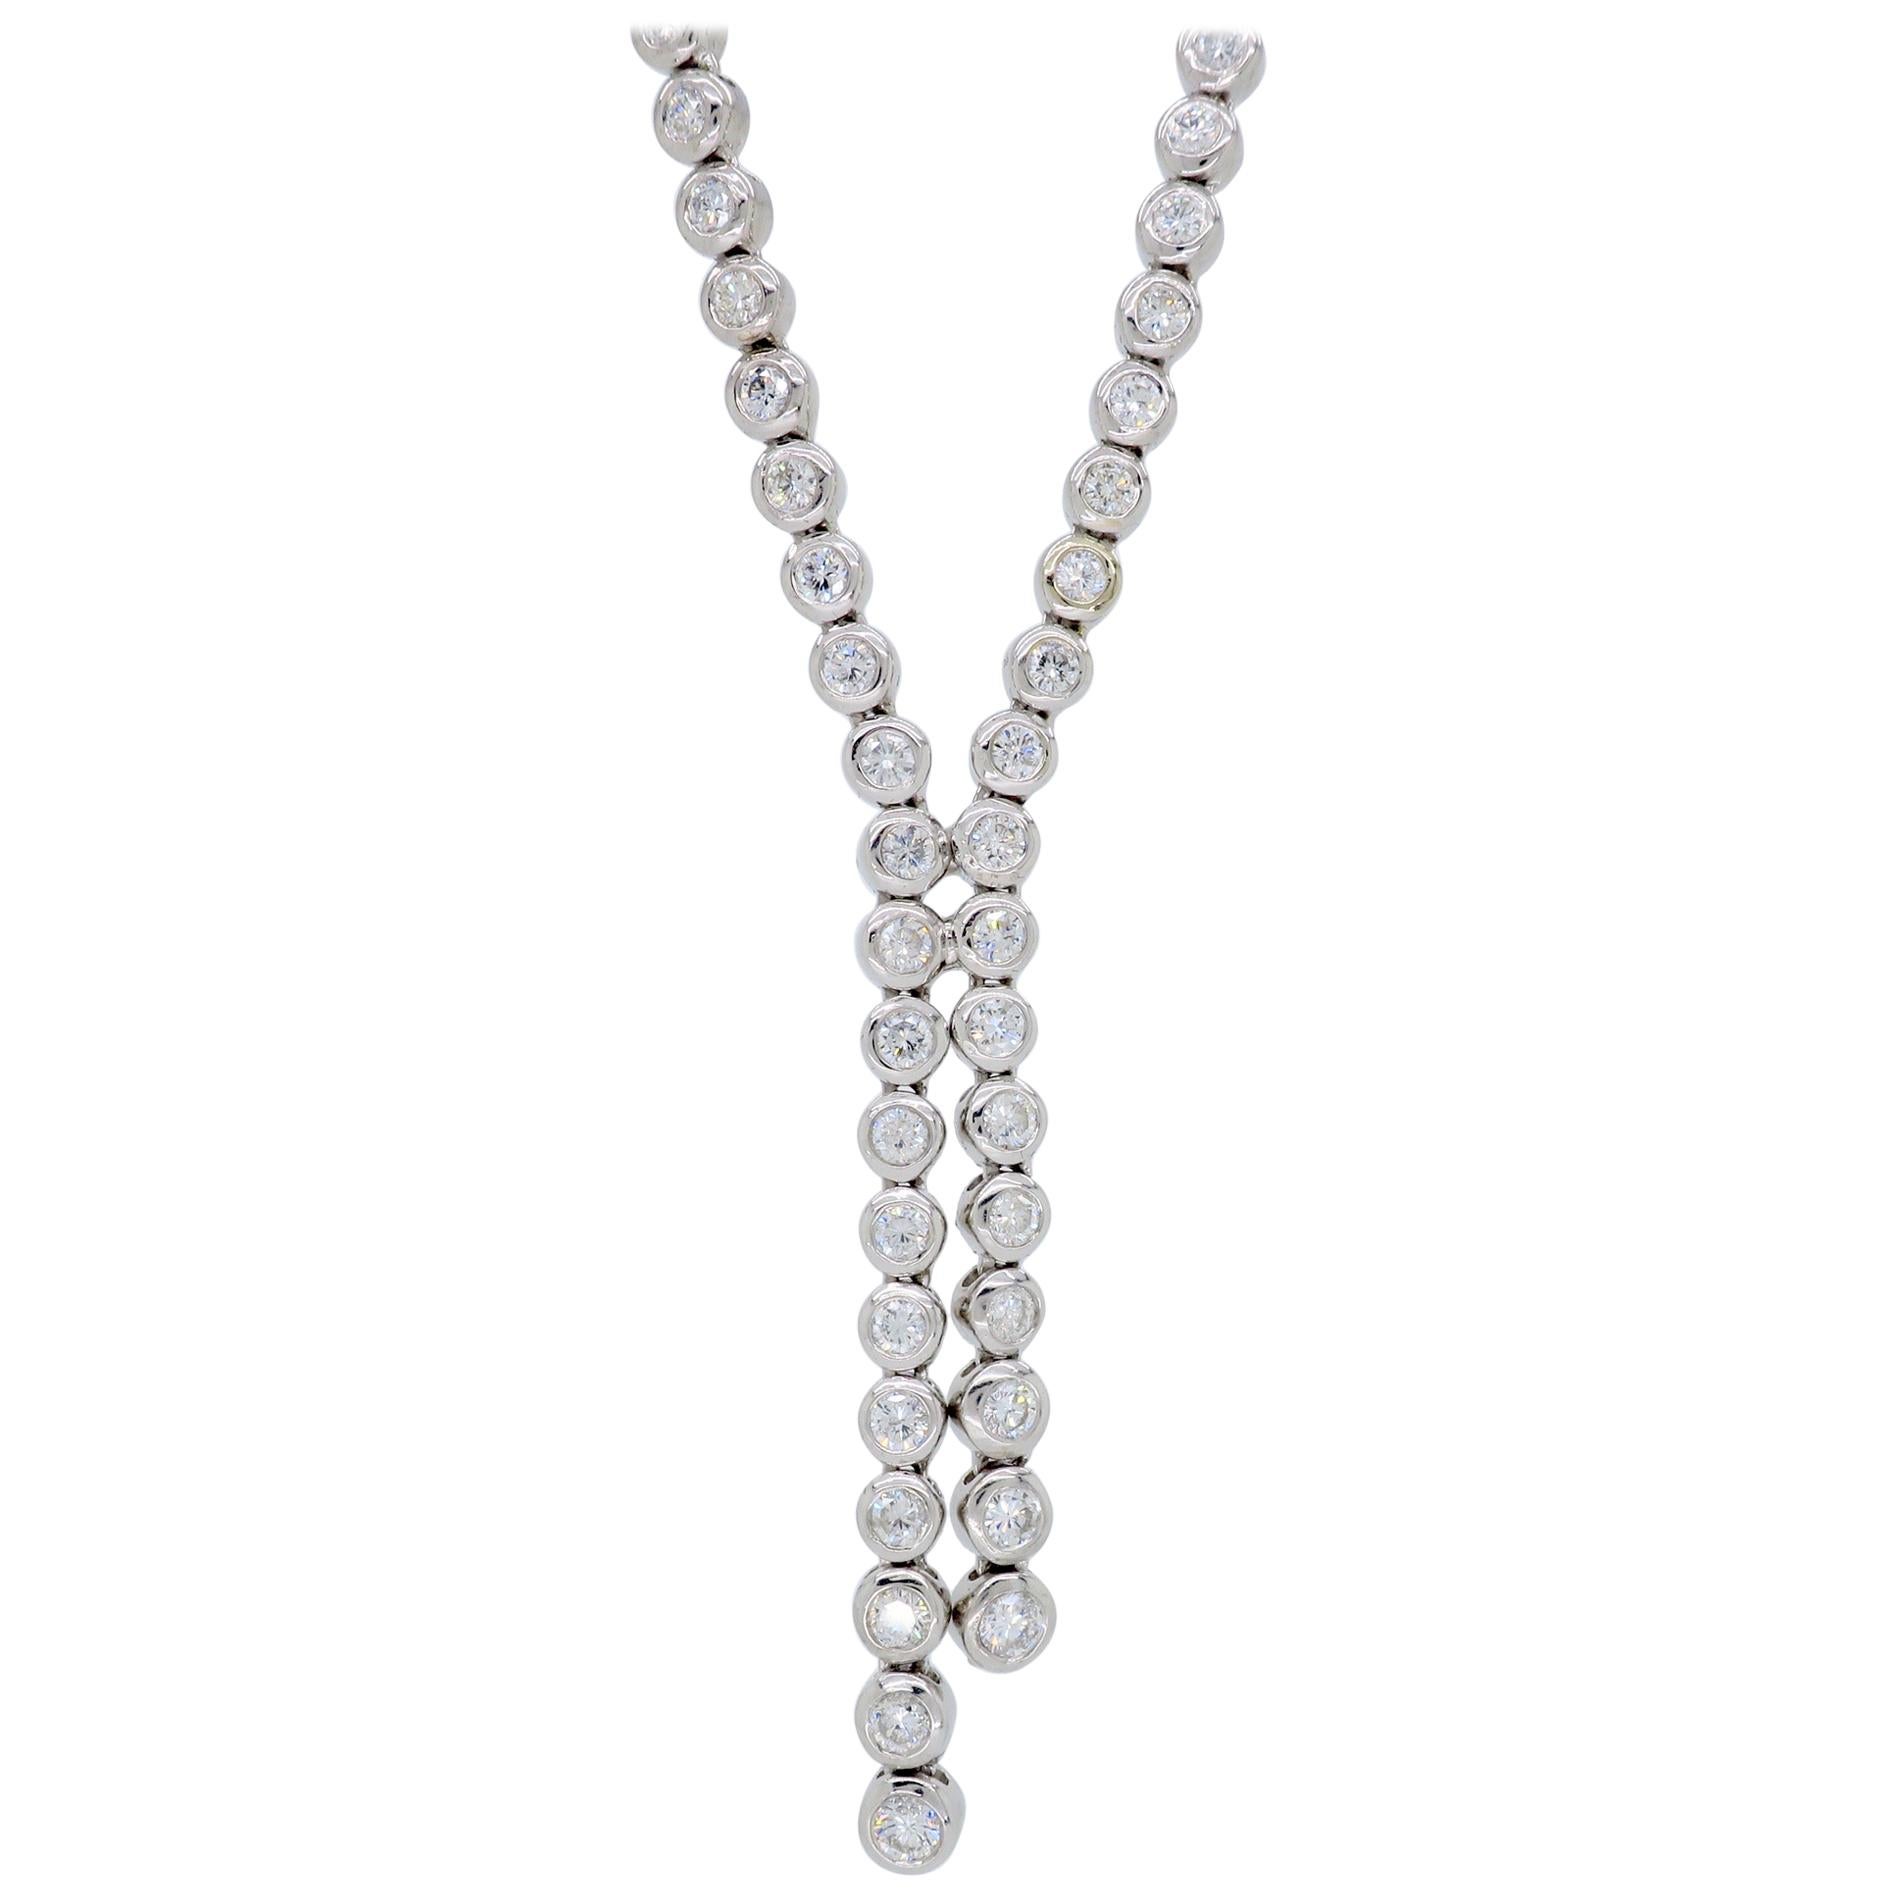 4 Carat Diamond Drop Necklace